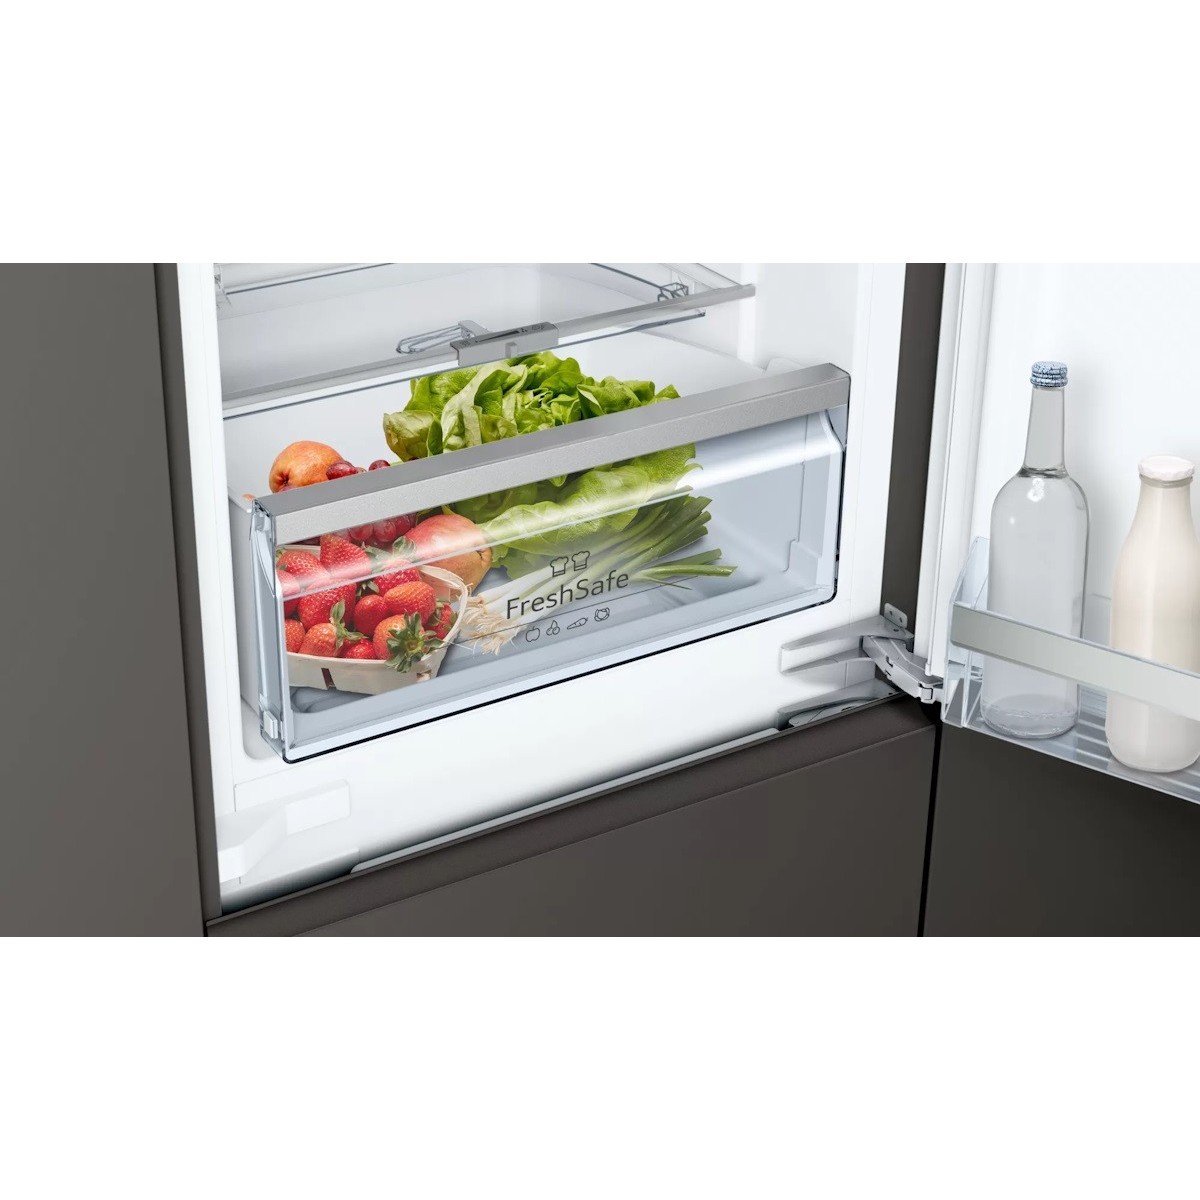 Встраиваемые холодильники Neff KI 6863 FE0G